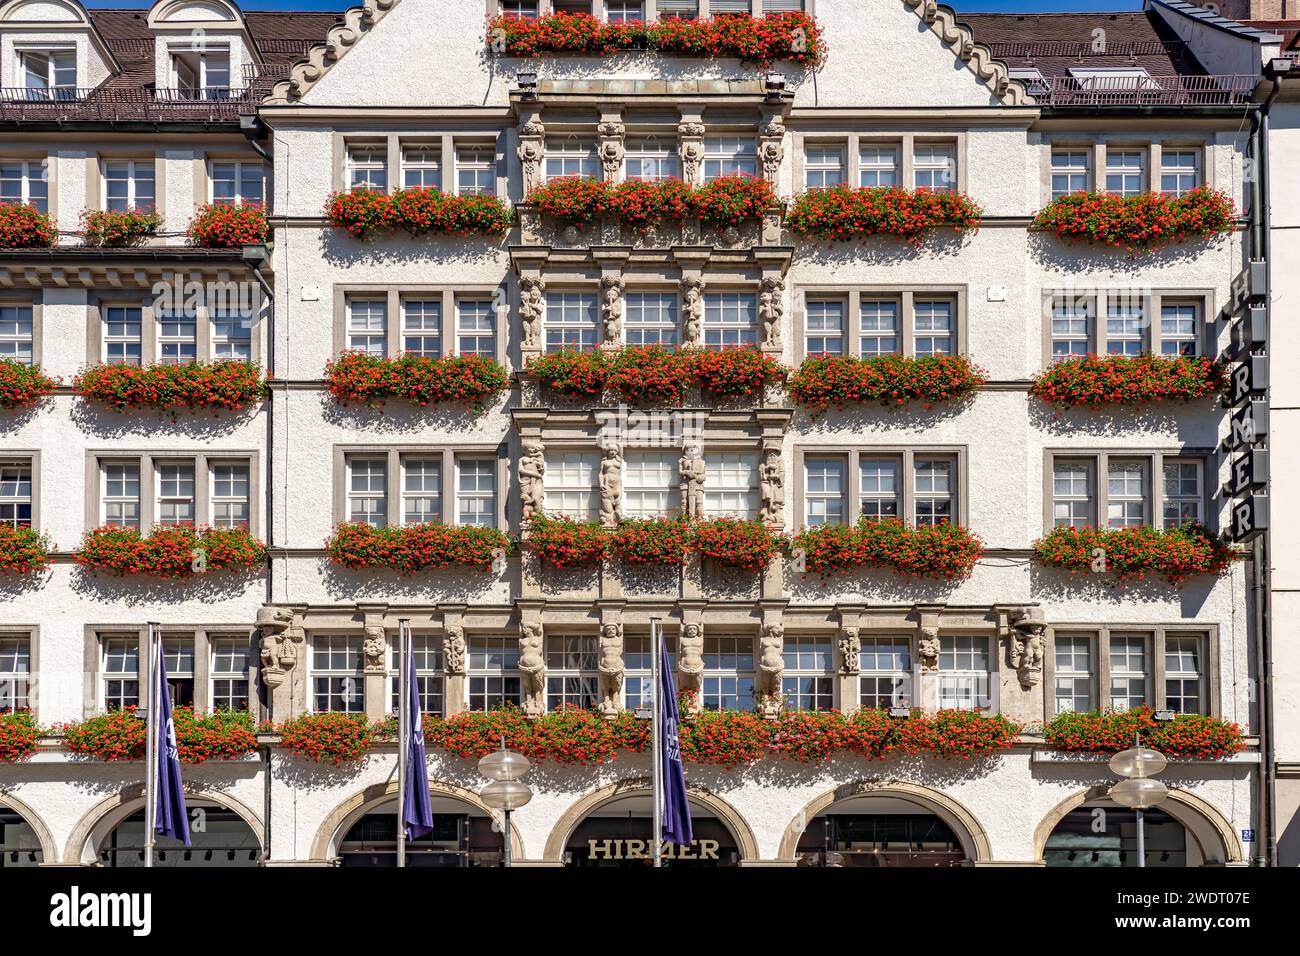 Blumenschmuck an der Fassade des Bekleidungsgeschäfts Hirmer in München, Bayern, Deutschland, Europa | Blumenschmuck des Hirmer Fashion Store Stockfoto